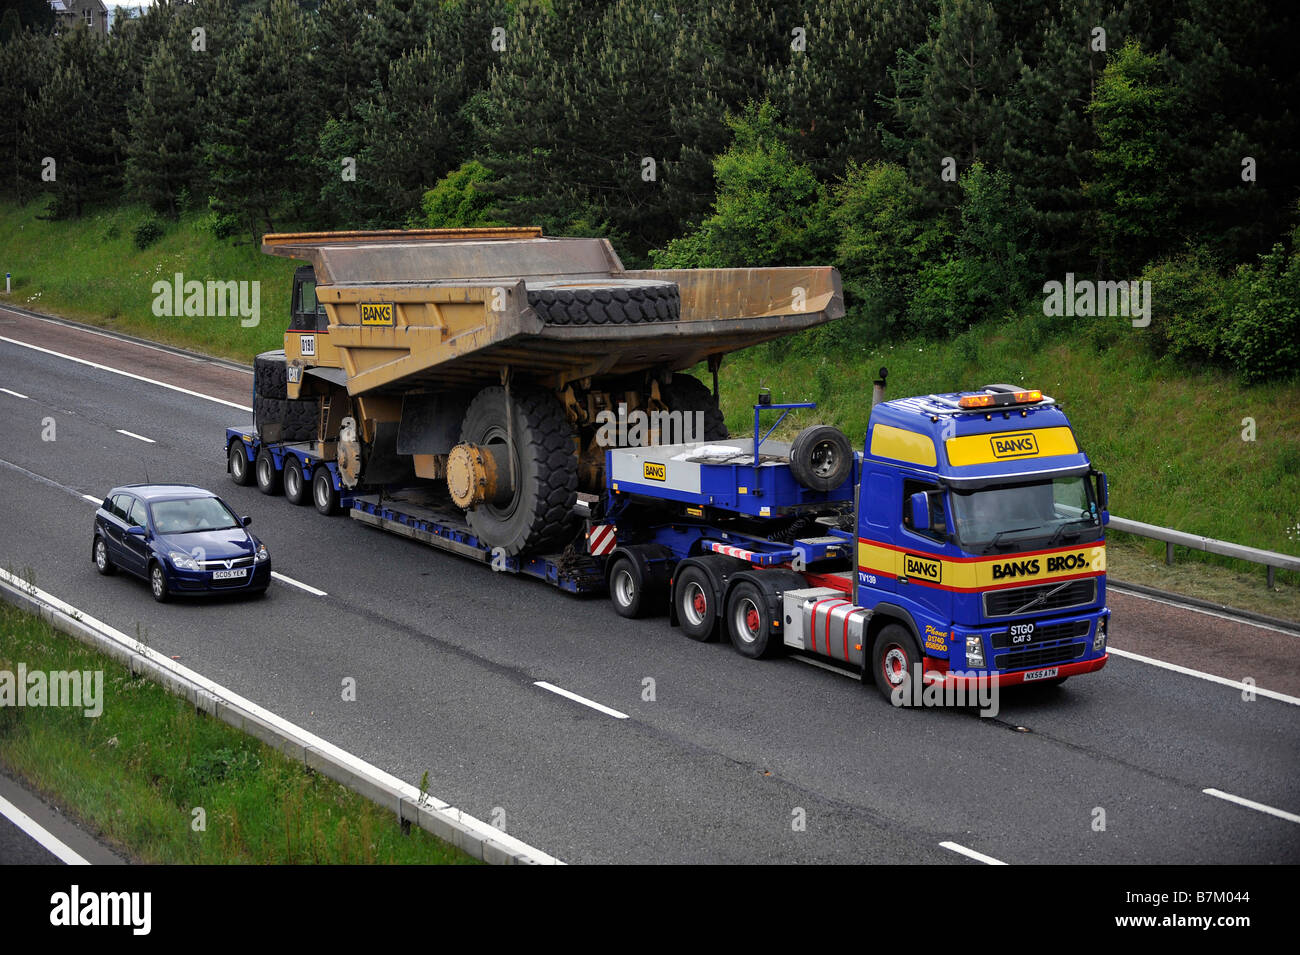 Los bancos Volvo FH transporte pesado camión que transportaba un camión volquete gigante amplia carga anormal en la autopista Foto de stock